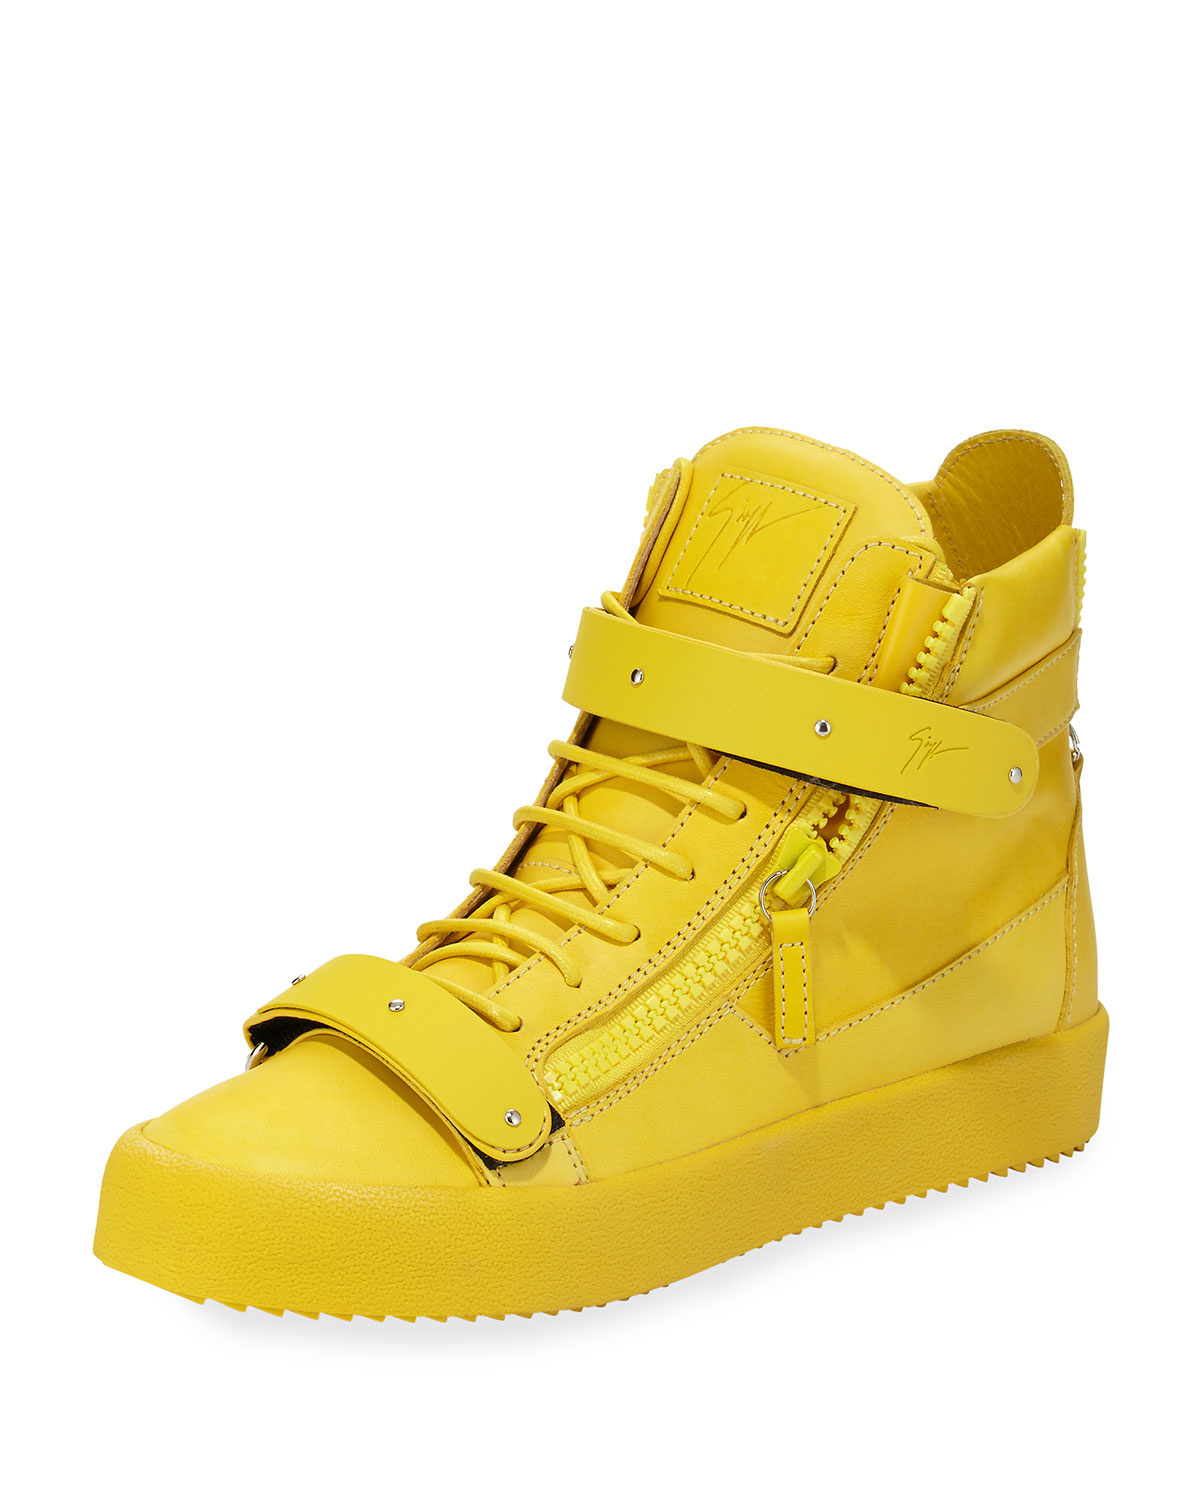 giuseppe zanotti yellow shoes